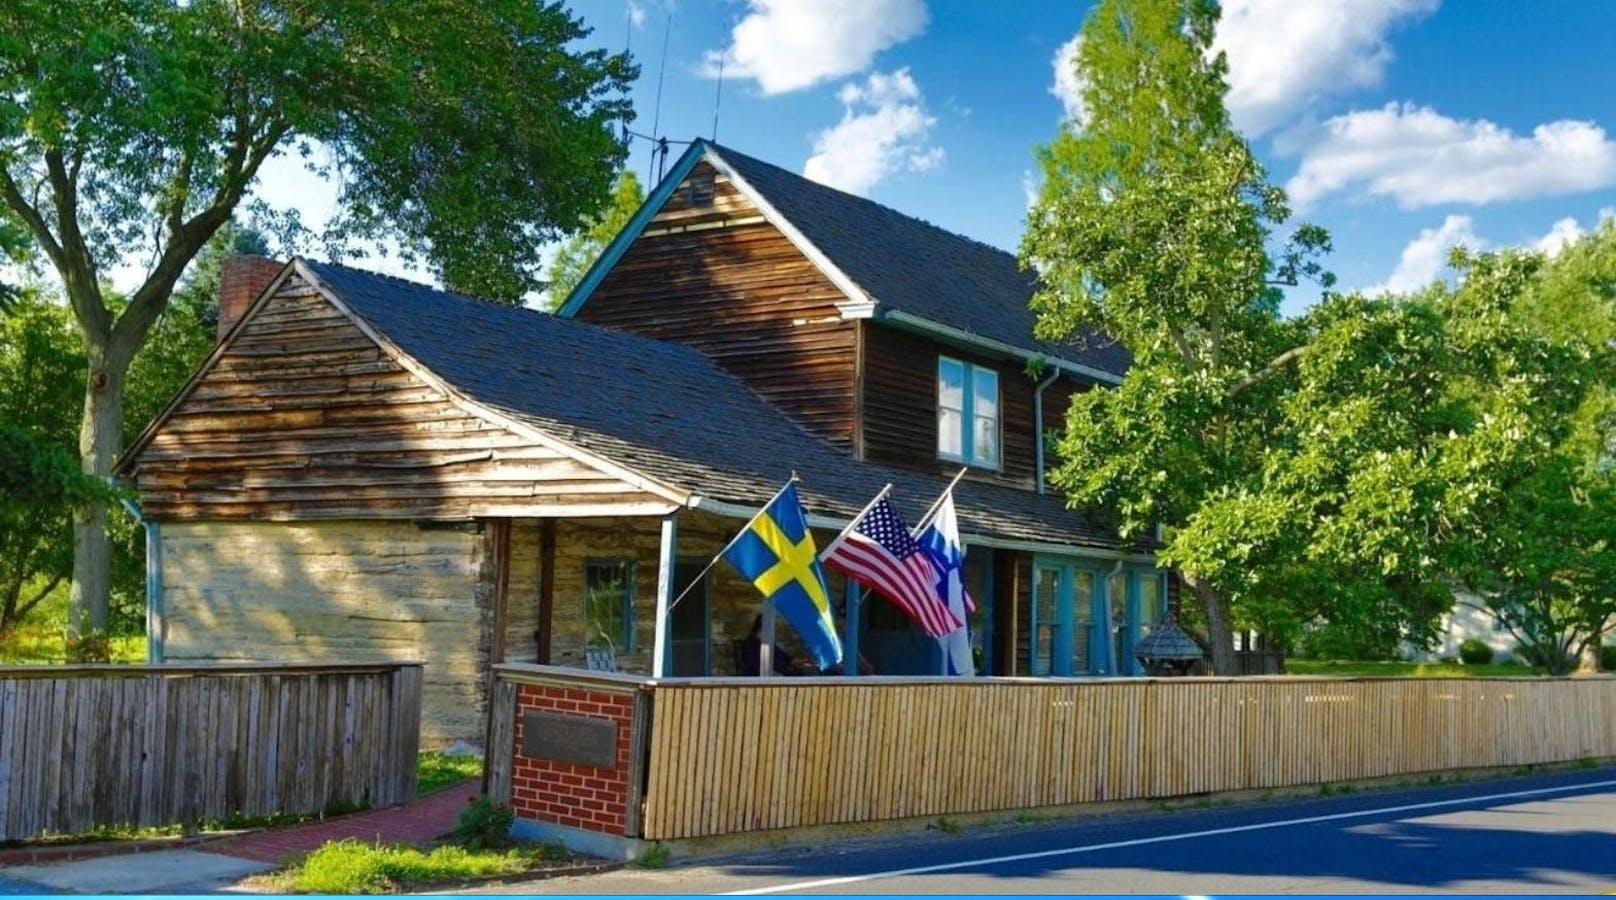 Das ist das Nothnagle Log House, angebaut an das Haus von Doris und Harry Rink.